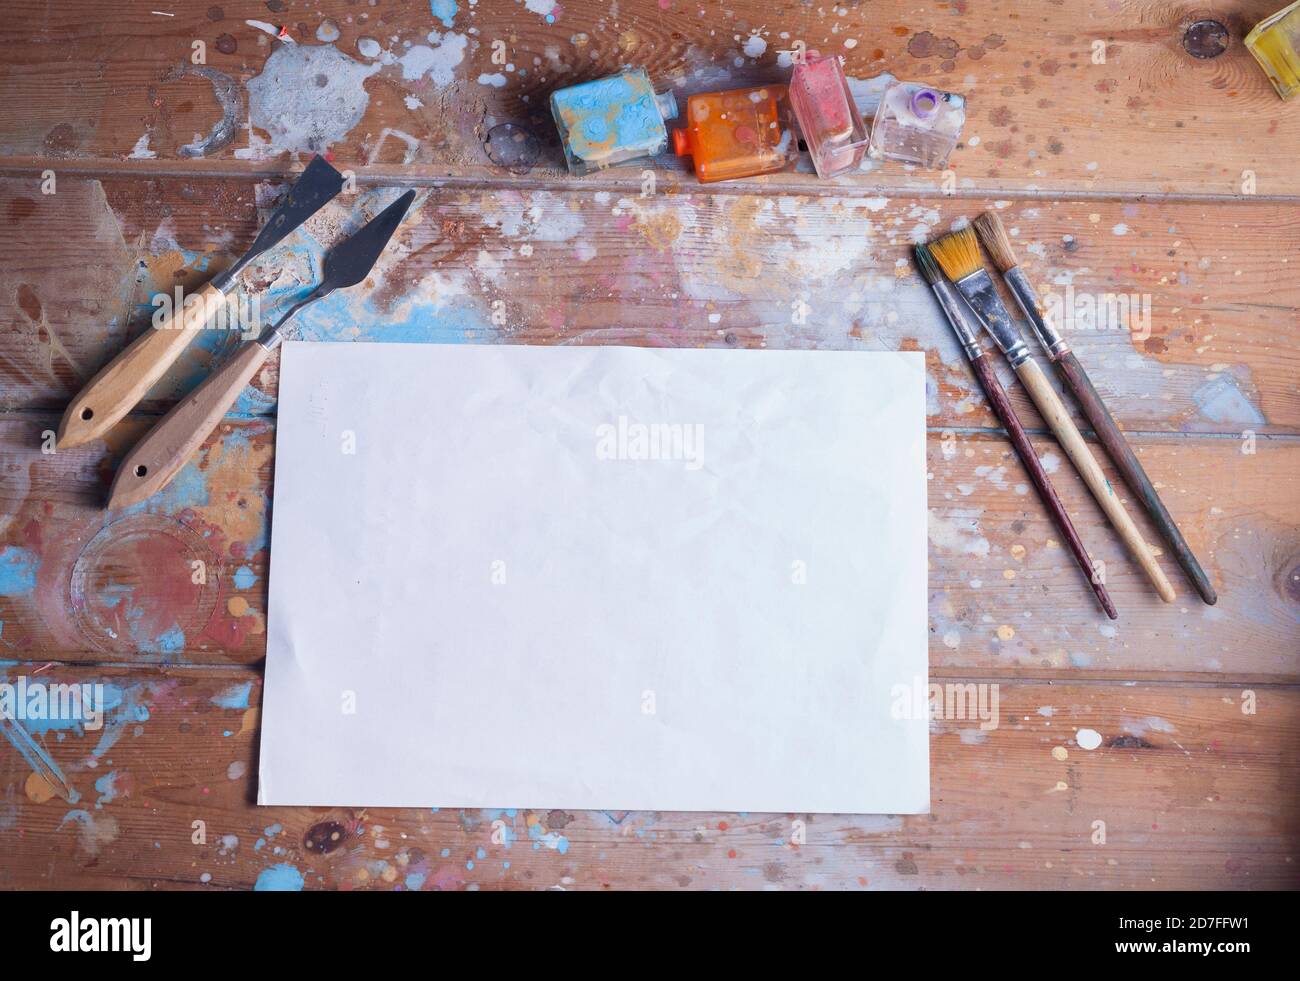 Artisti scrivania e materiali mockup.vari pennelli e pallete coltelli.l'immagine contiene un foglio bianco di carta ideale per un mockup creativo. Foto Stock